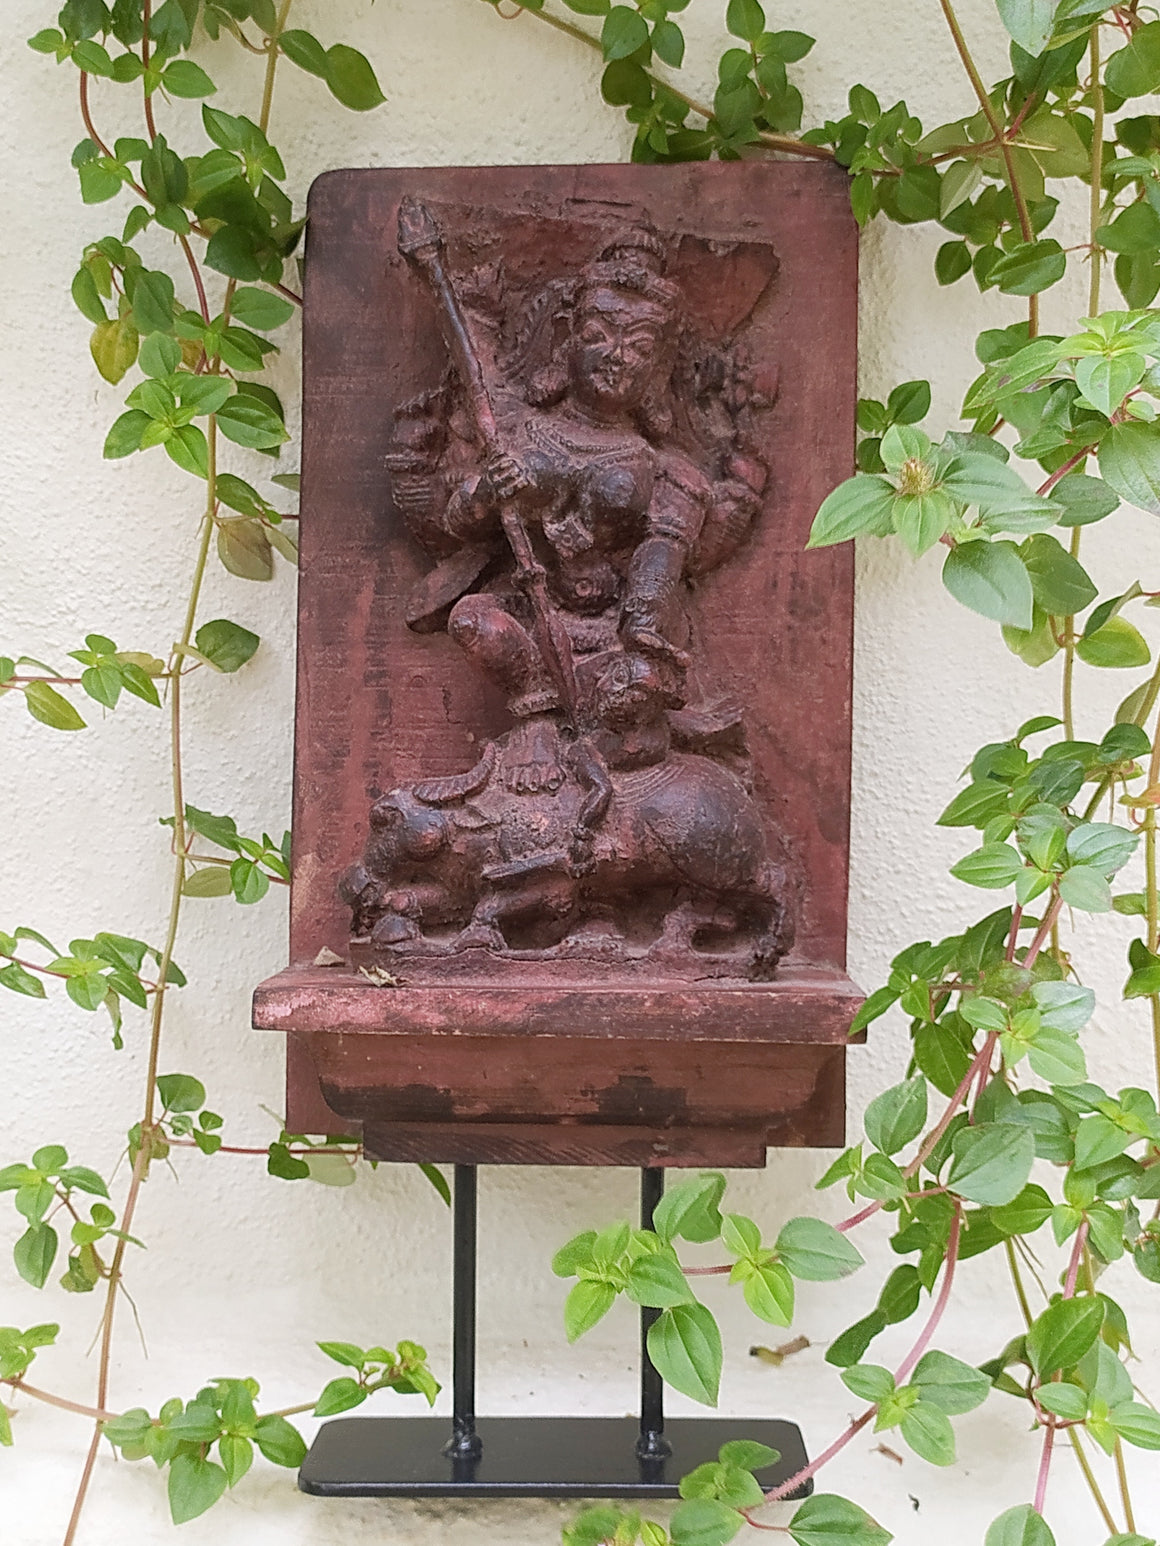 Vintage Wood Carving Of Kali - Goddess of War, Change, Creation, Destruction & Power. Height 48 cm x Width 20 cm